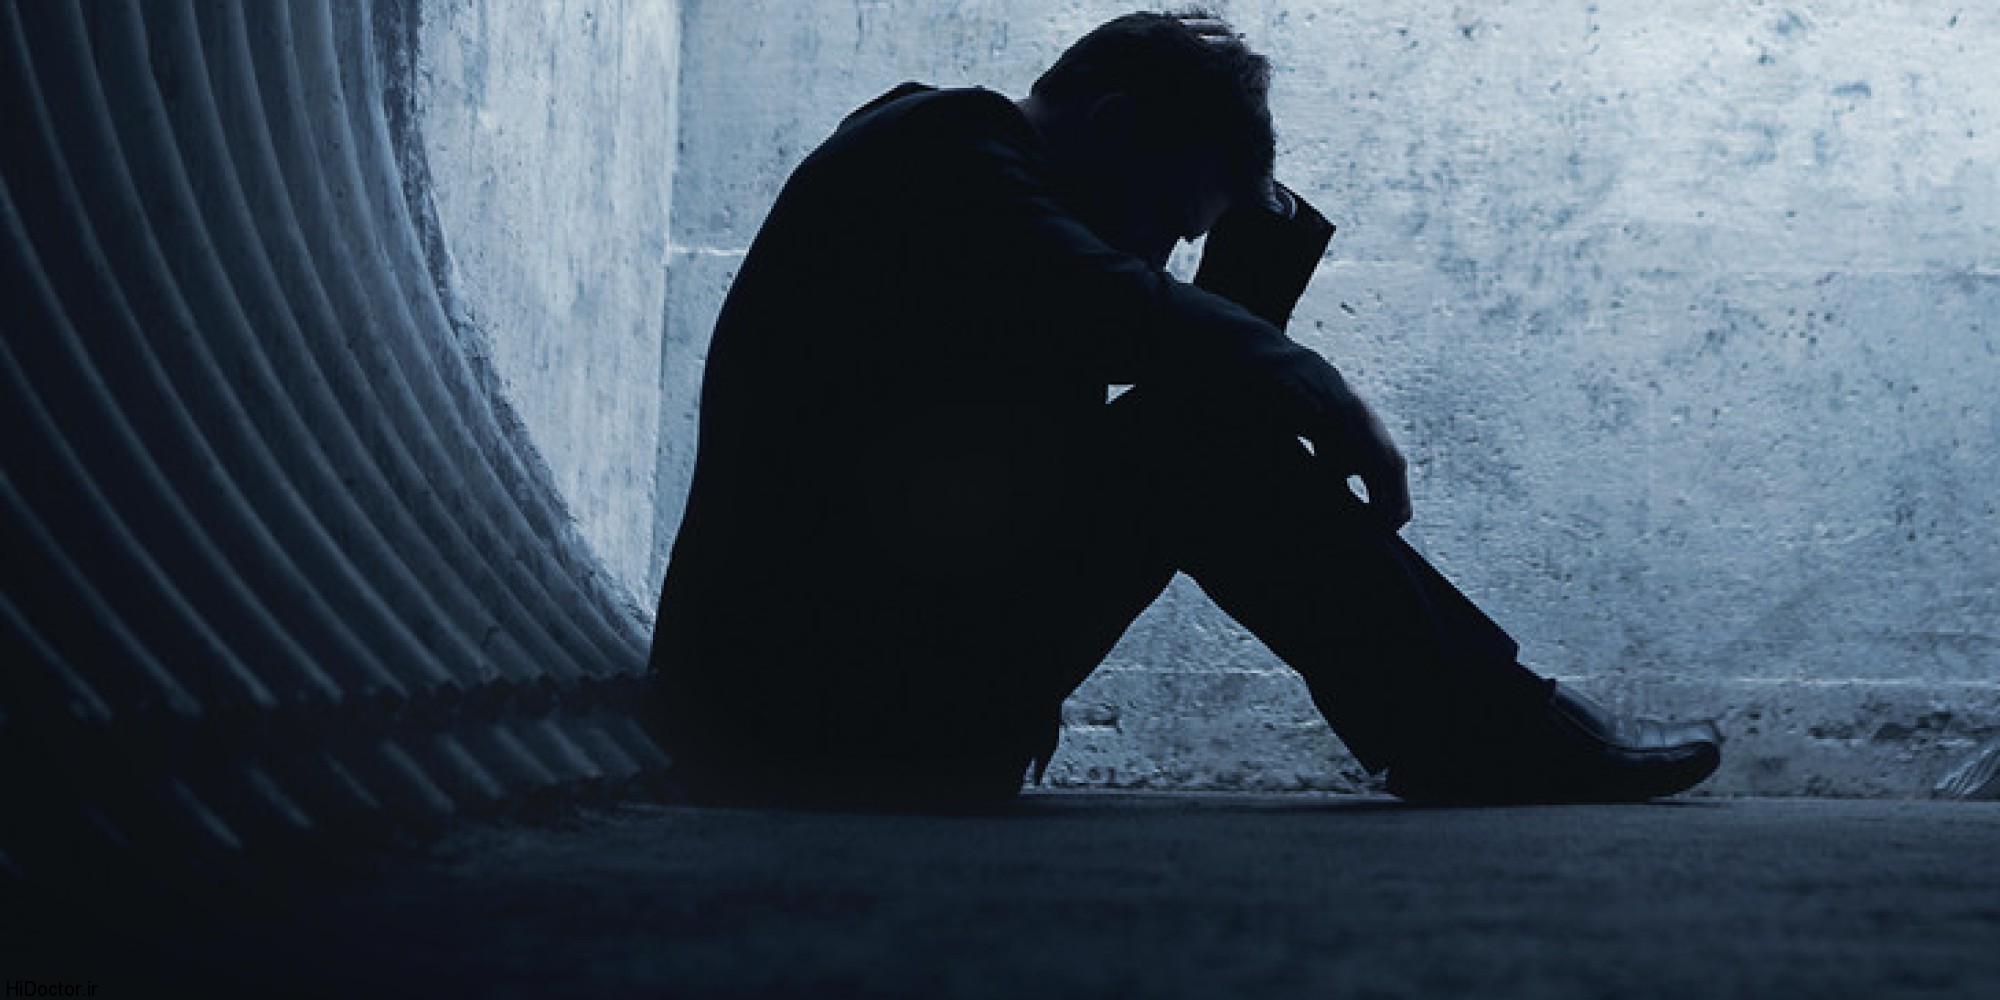  علل افزایش آسیب های روانی کرونا در مردان چیست؟